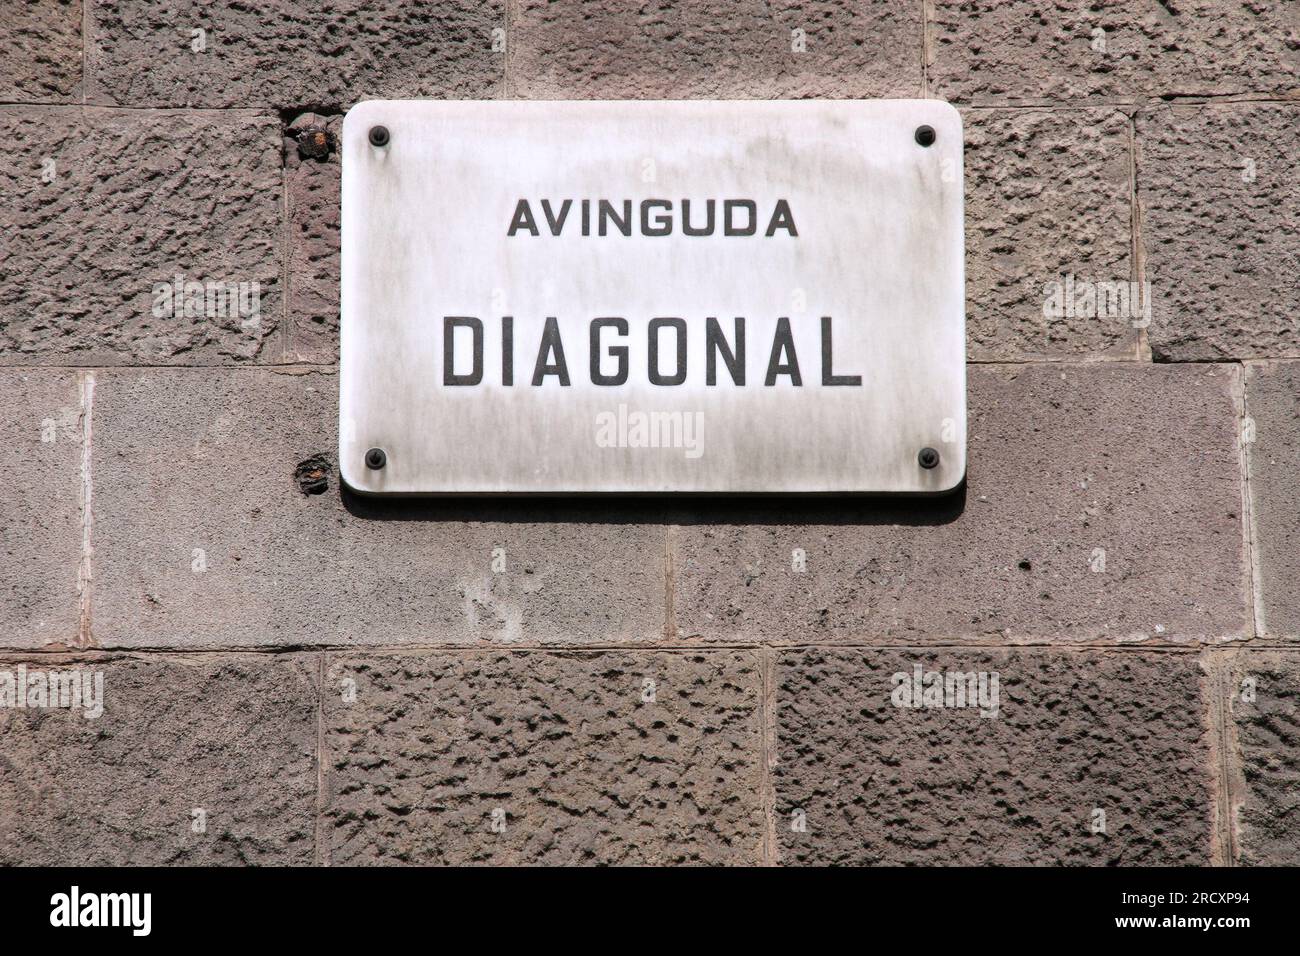 Une des rues les plus importantes de Barcelone - Avinguda Diagonal (avenue Diagonal). Panneau de rue. Banque D'Images